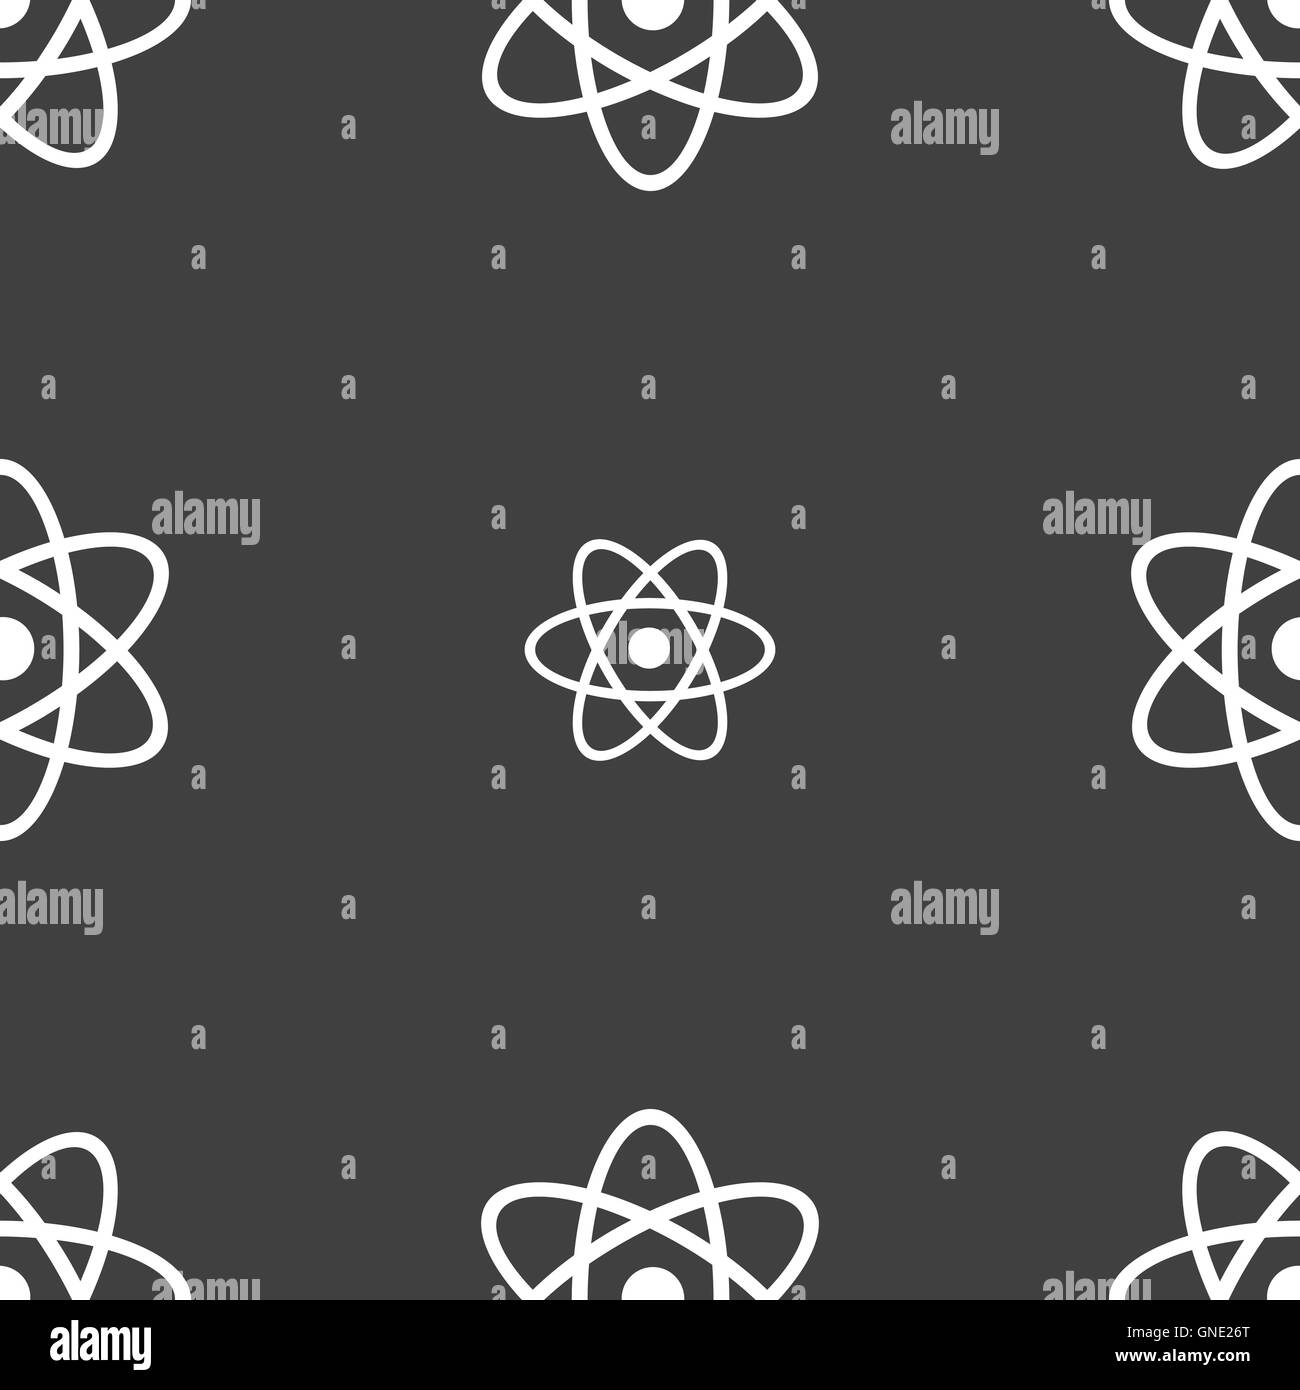 Atom, Physik Symbol Zeichen. Nahtlose Muster auf einem grauen Hintergrund. Vektor Stock Vektor